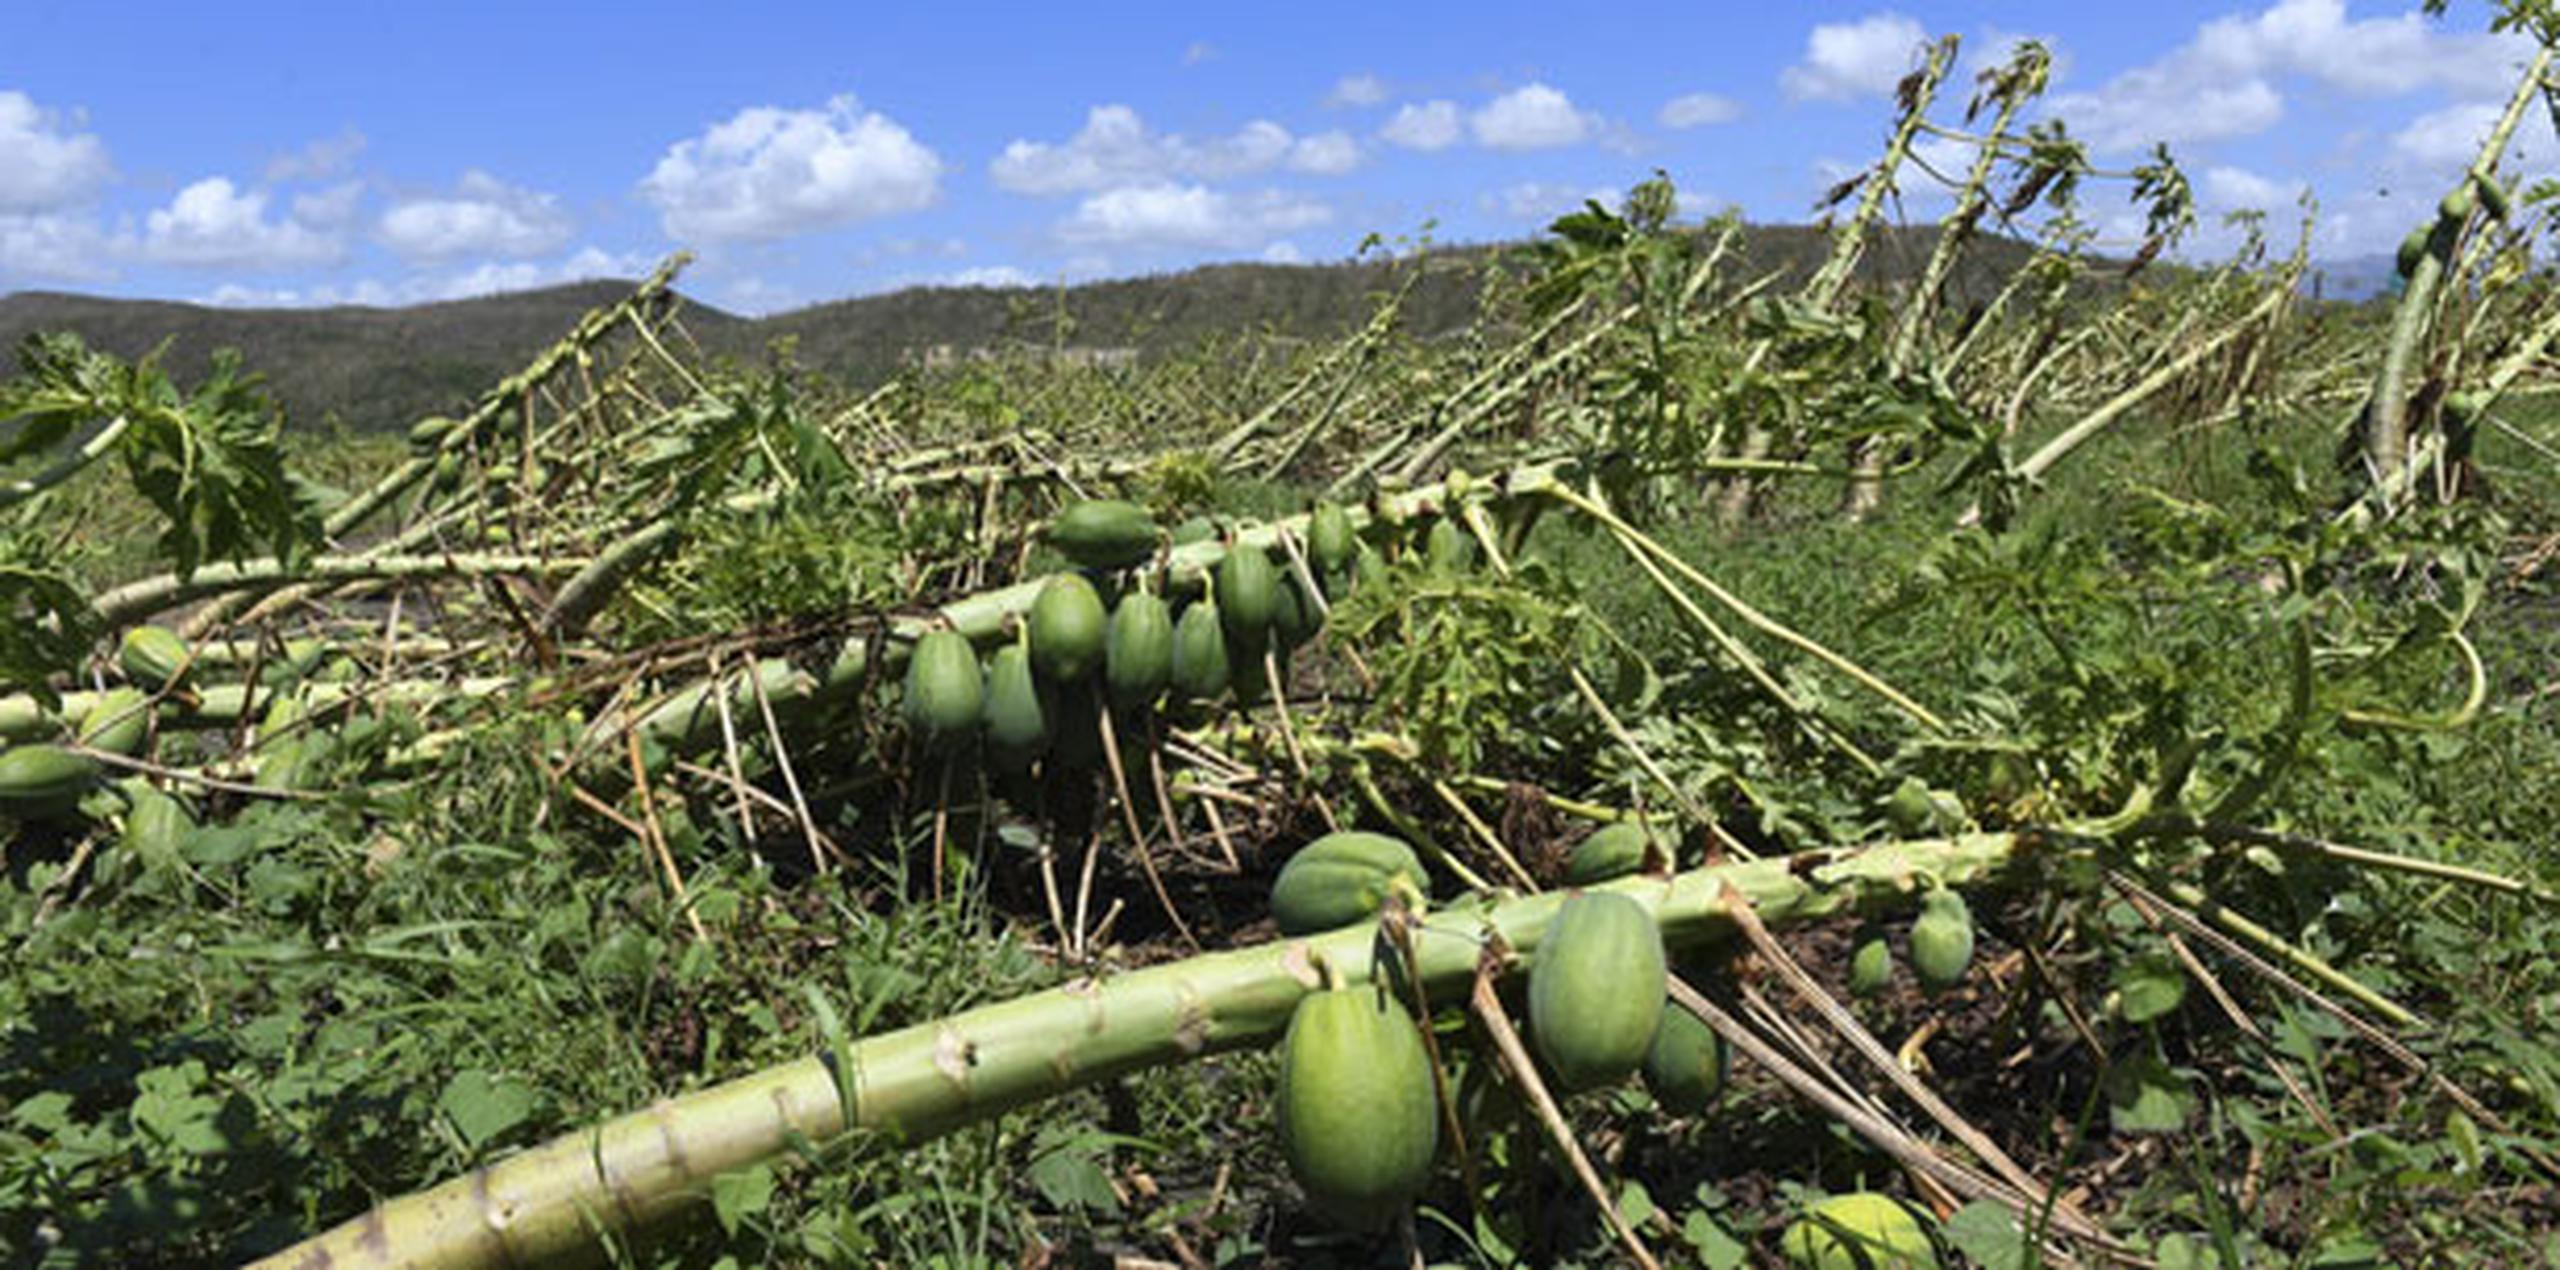 Según Flores, el Programa de Subsidio Salarial, que este año se maneja con 15 millones de dólares, solamente afecta a 1,800 agricultores de un conglomerado de 20,000 en la isla. (Archivo)